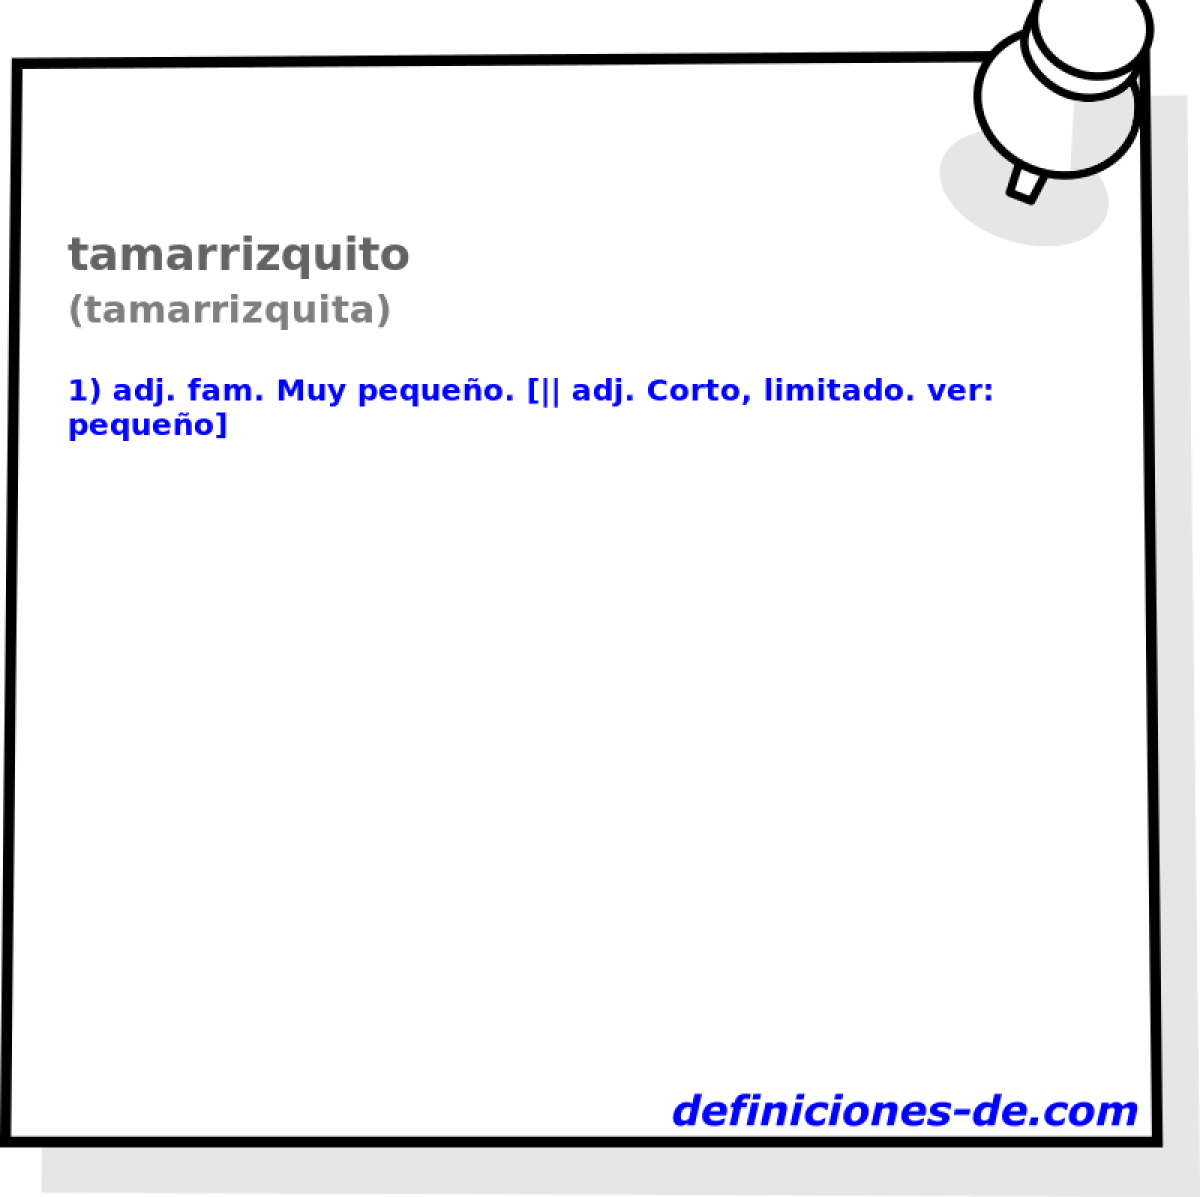 tamarrizquito (tamarrizquita)